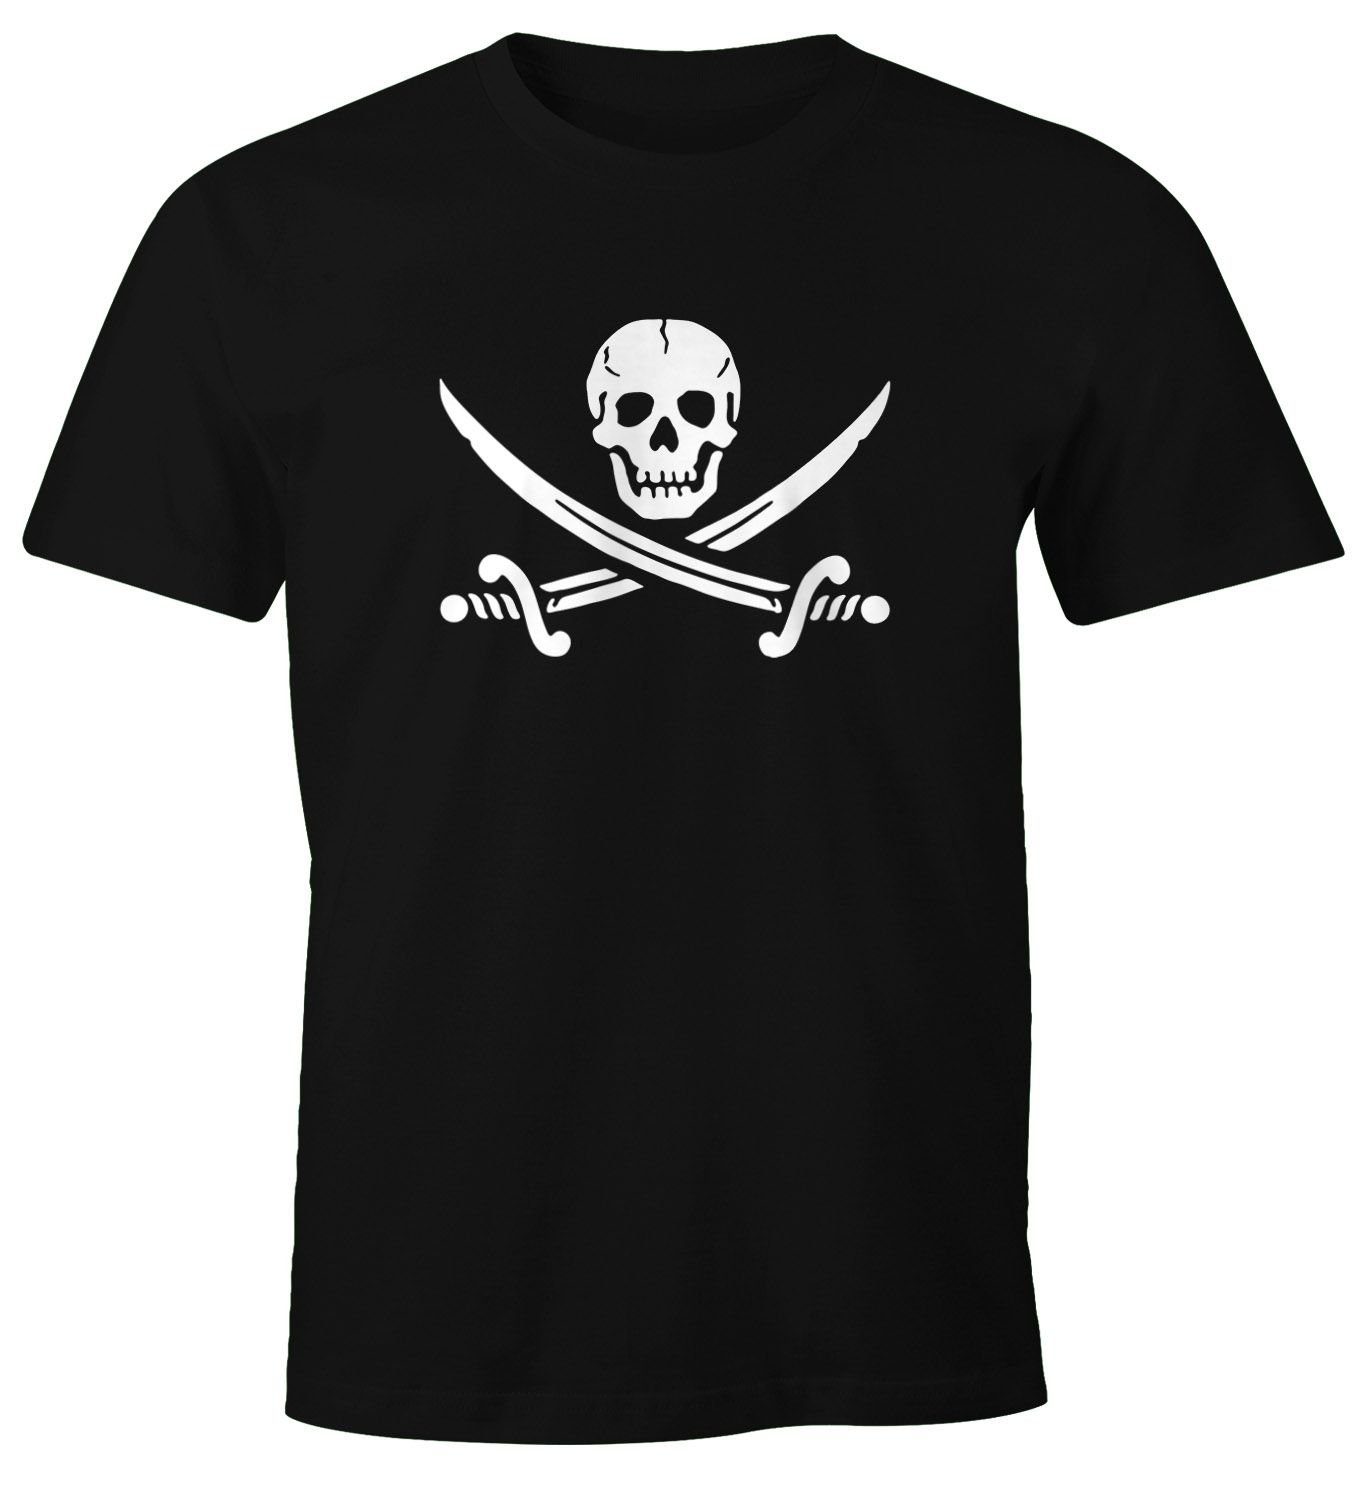 MoonWorks Print-Shirt Herren T-Shirt Totenkopf Pirat Piratenflagge Motiv Black Jack Fun Shirt Moonworks® mit Print